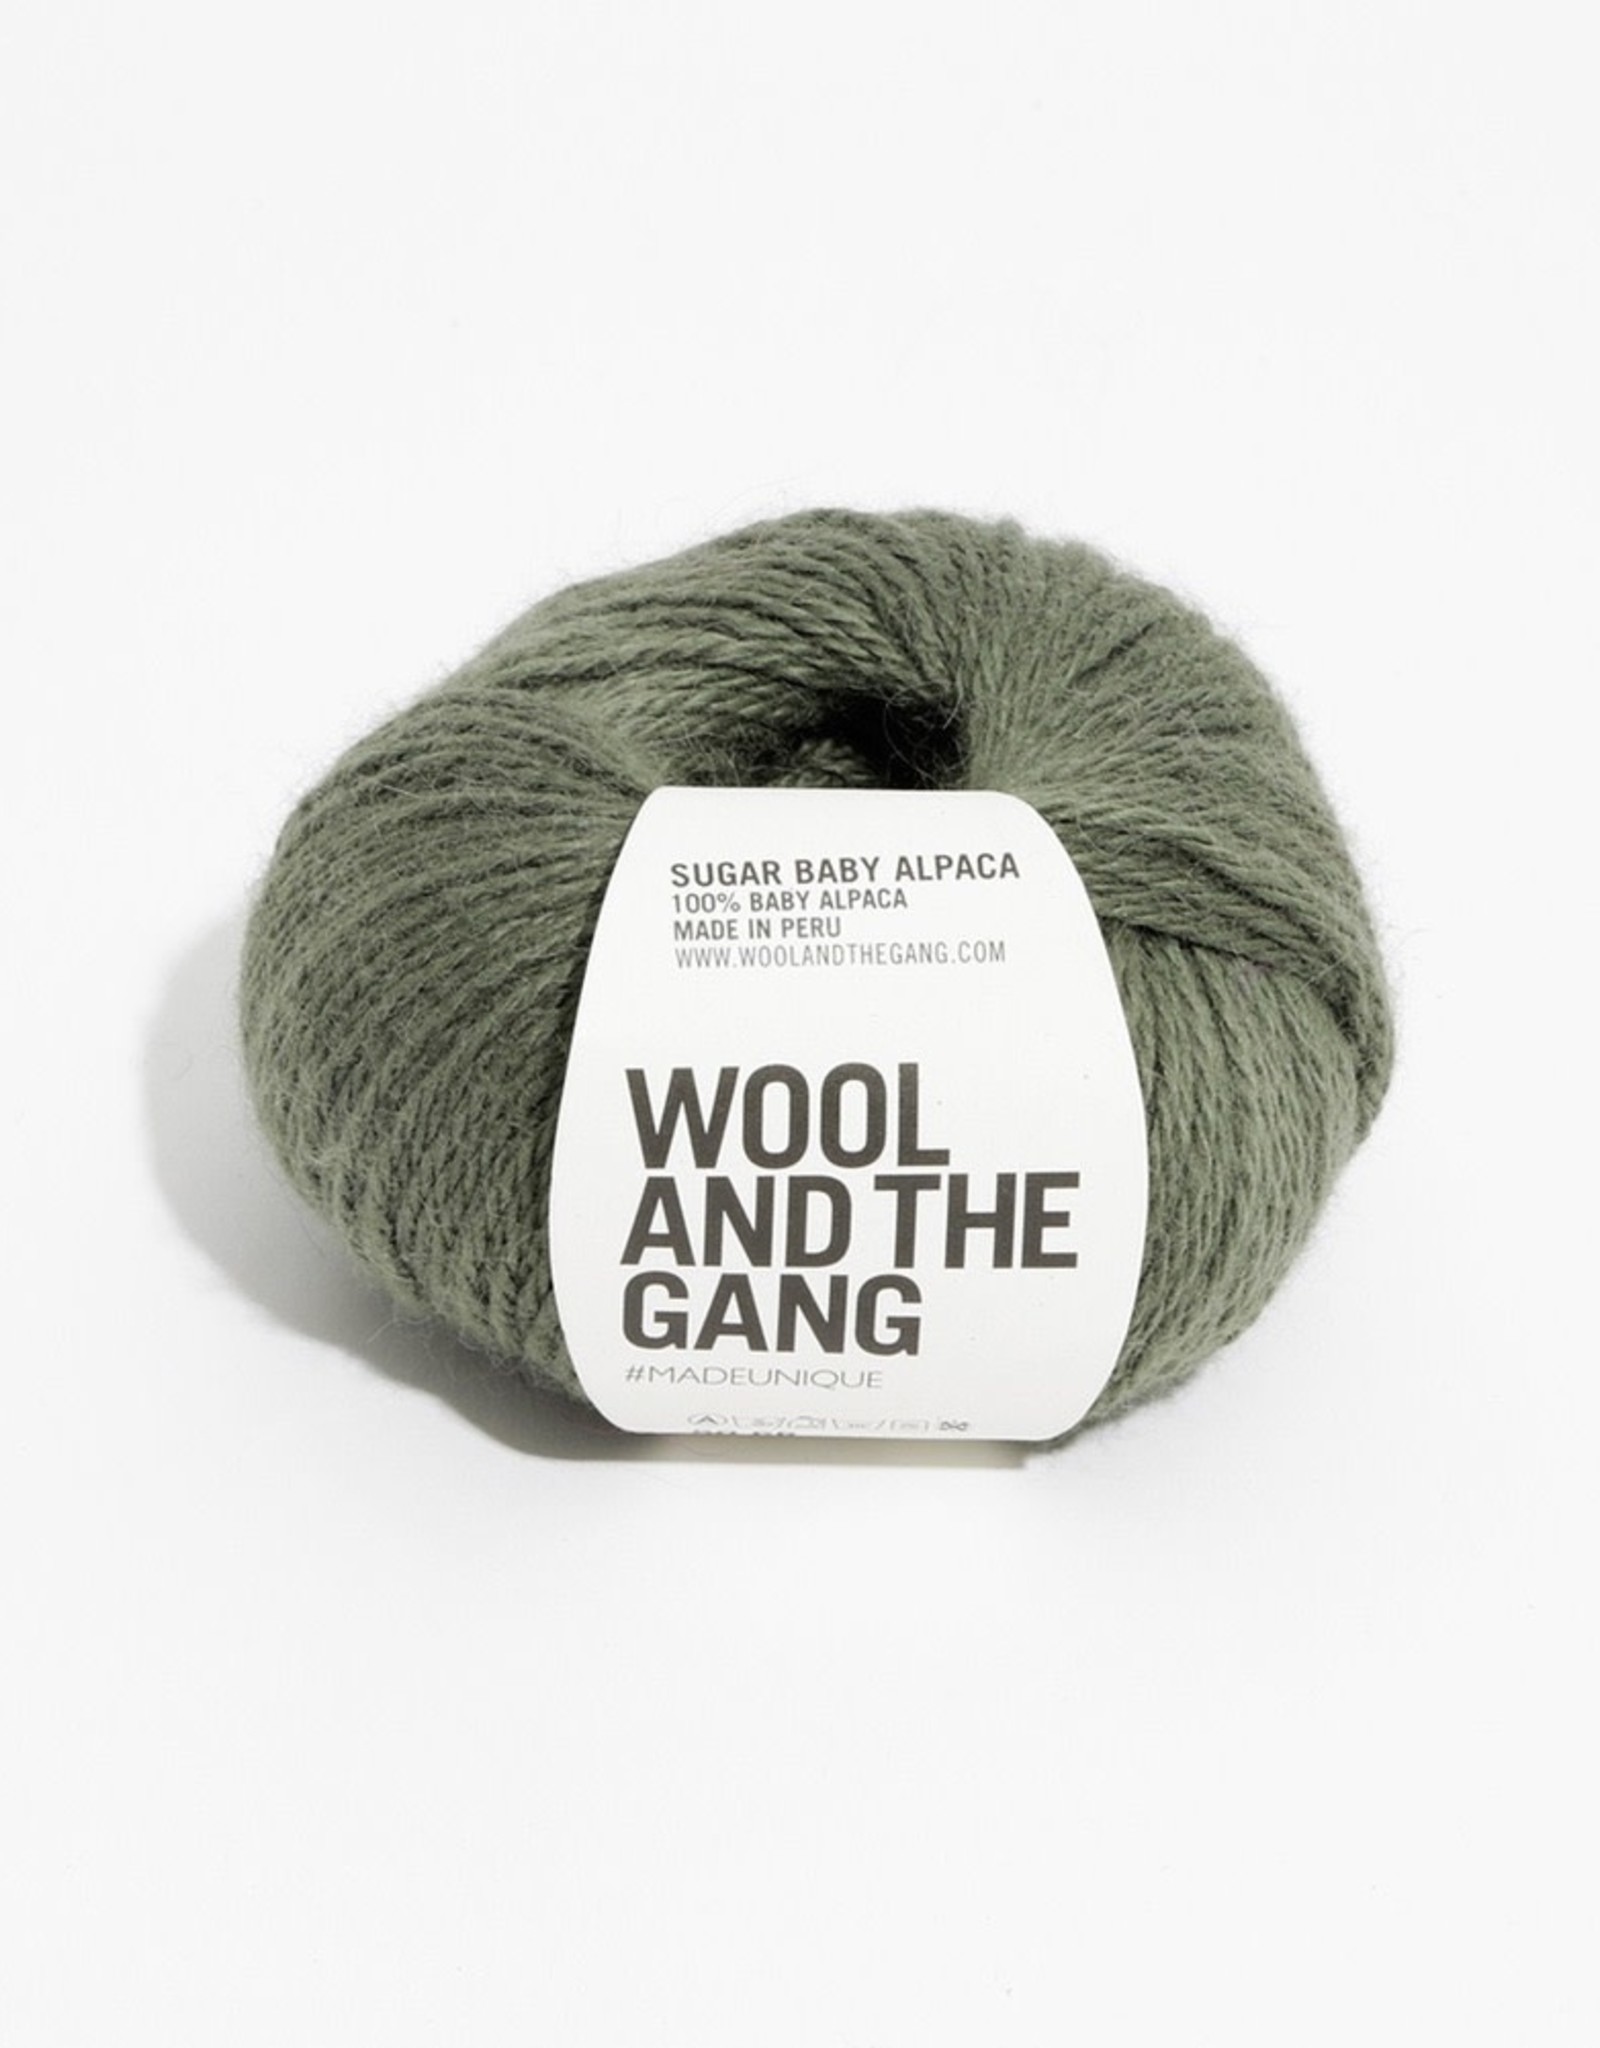 Wool and the Gang Sugar Baby Alpaca